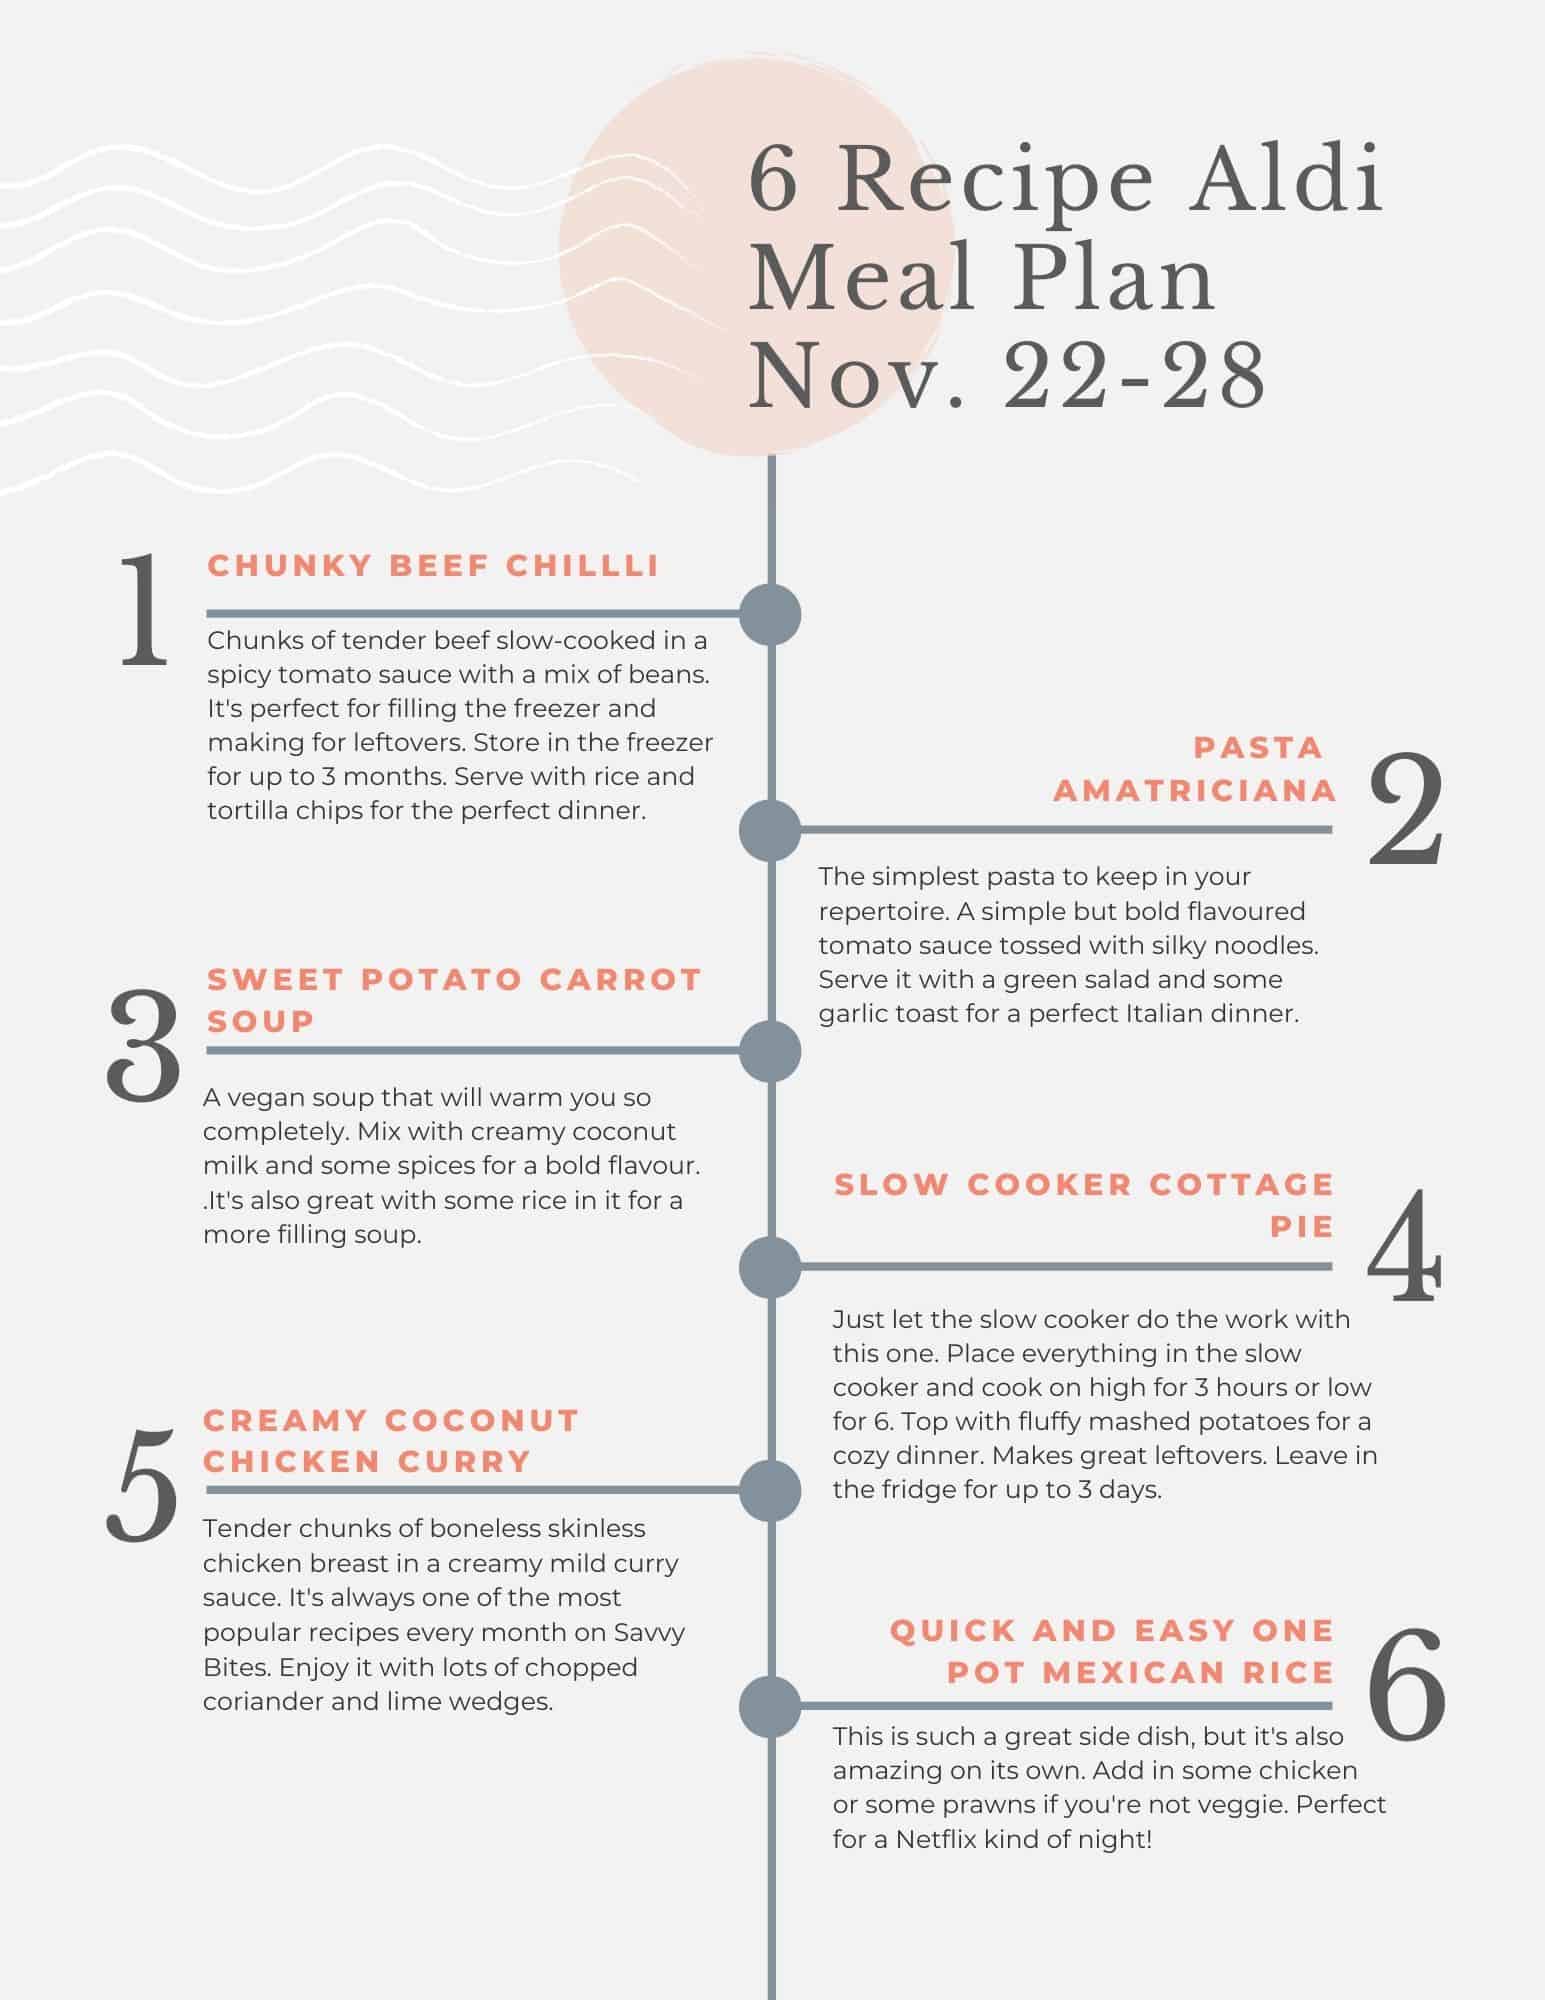 Aldi Meal plan tip sheet. Free printable